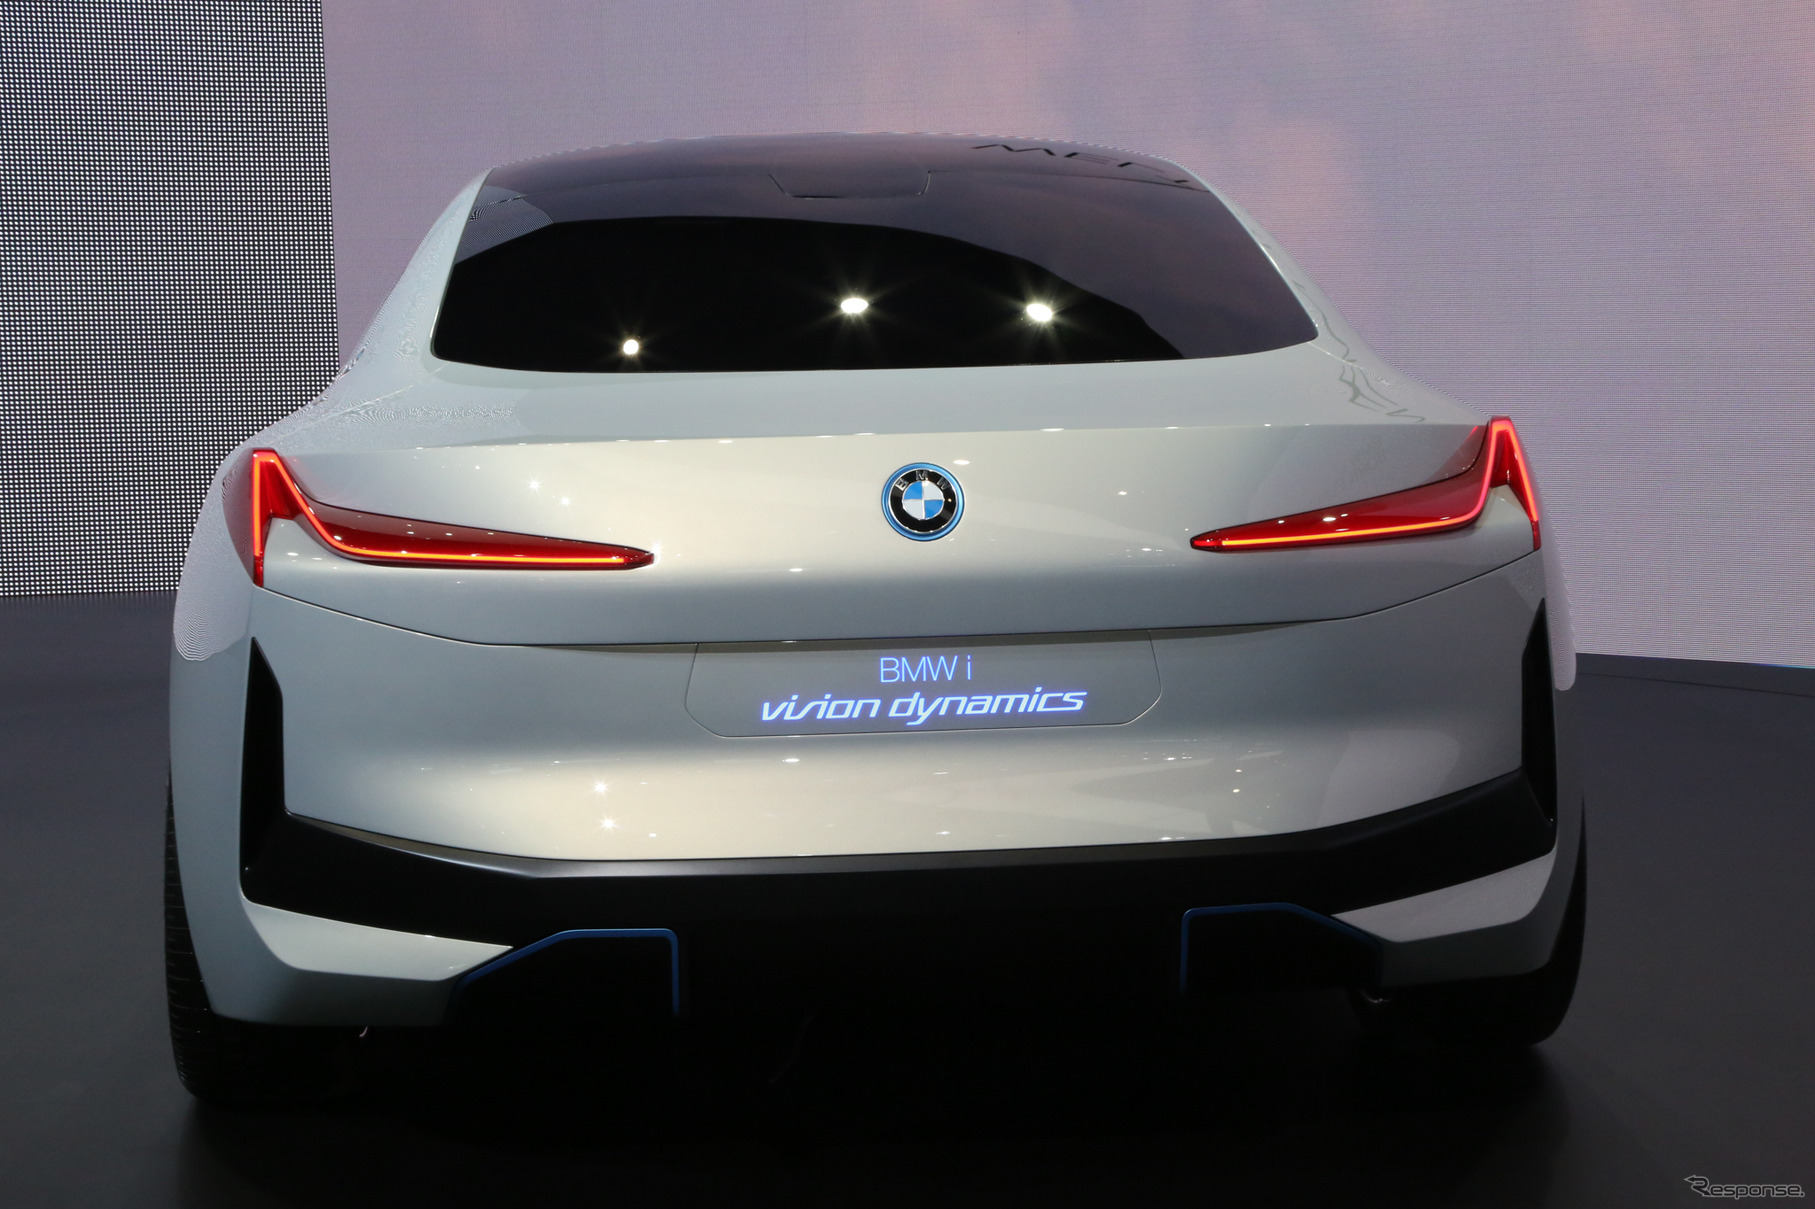 BMW i ビジョン ダイナミクス（フランクフルトモータショー2017）